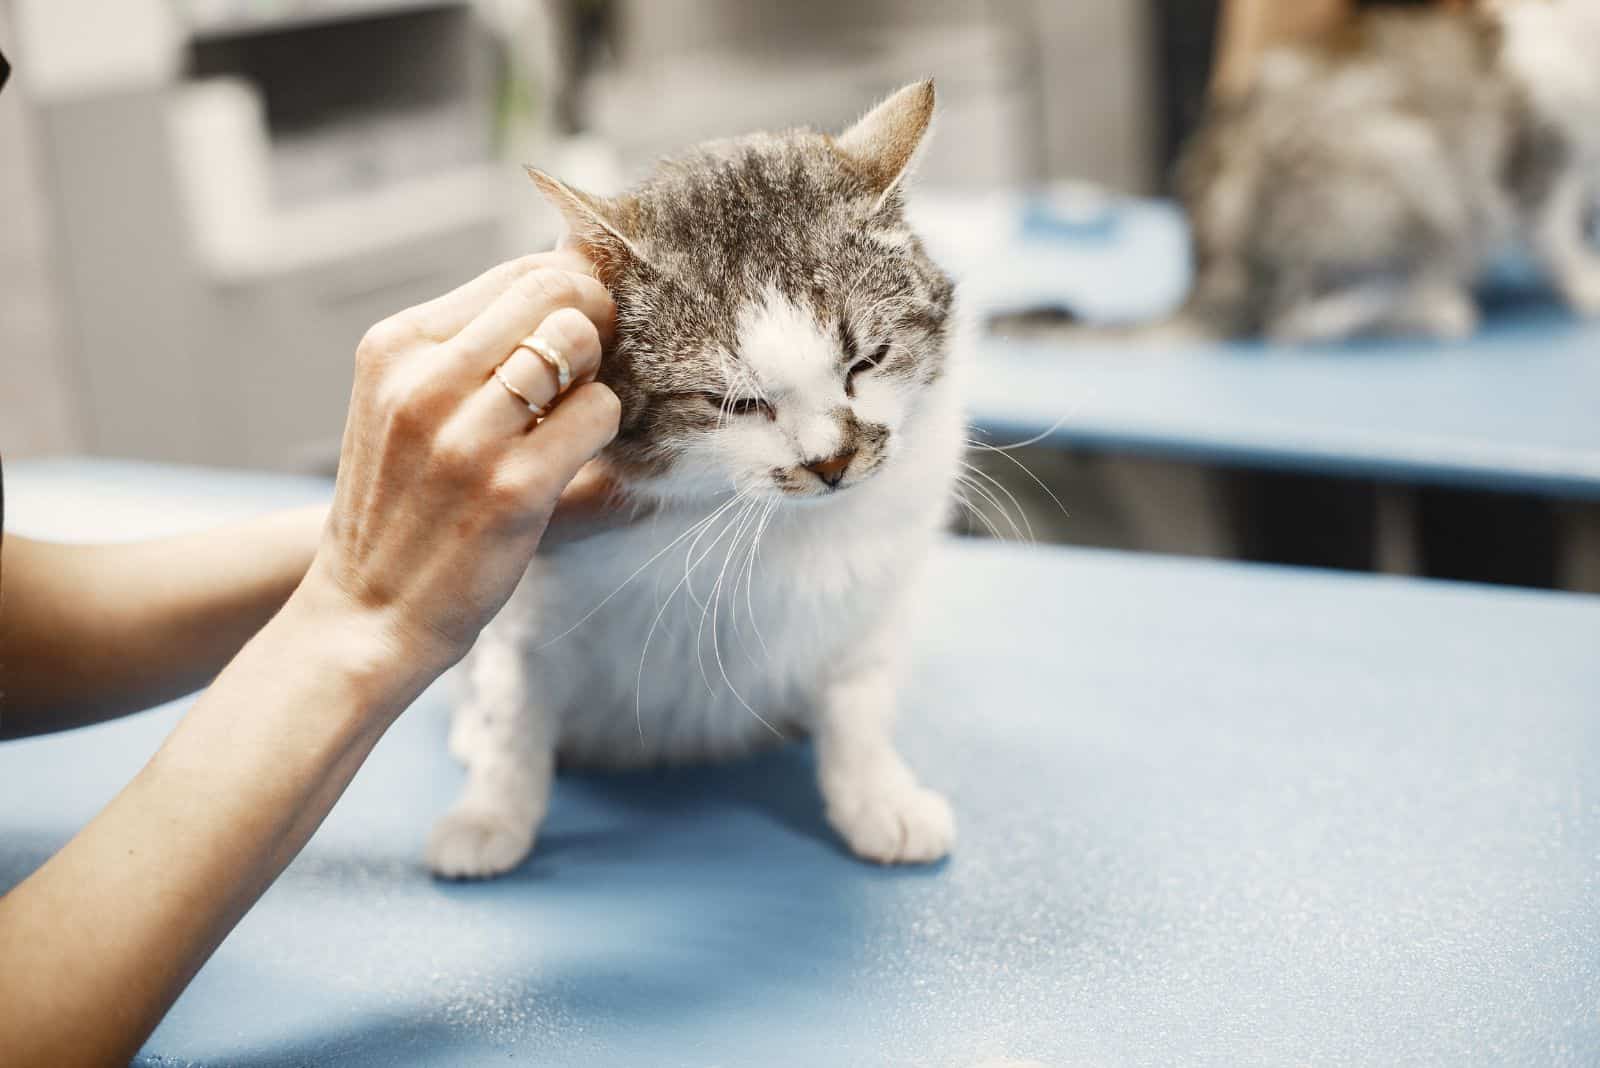 kitten with vet